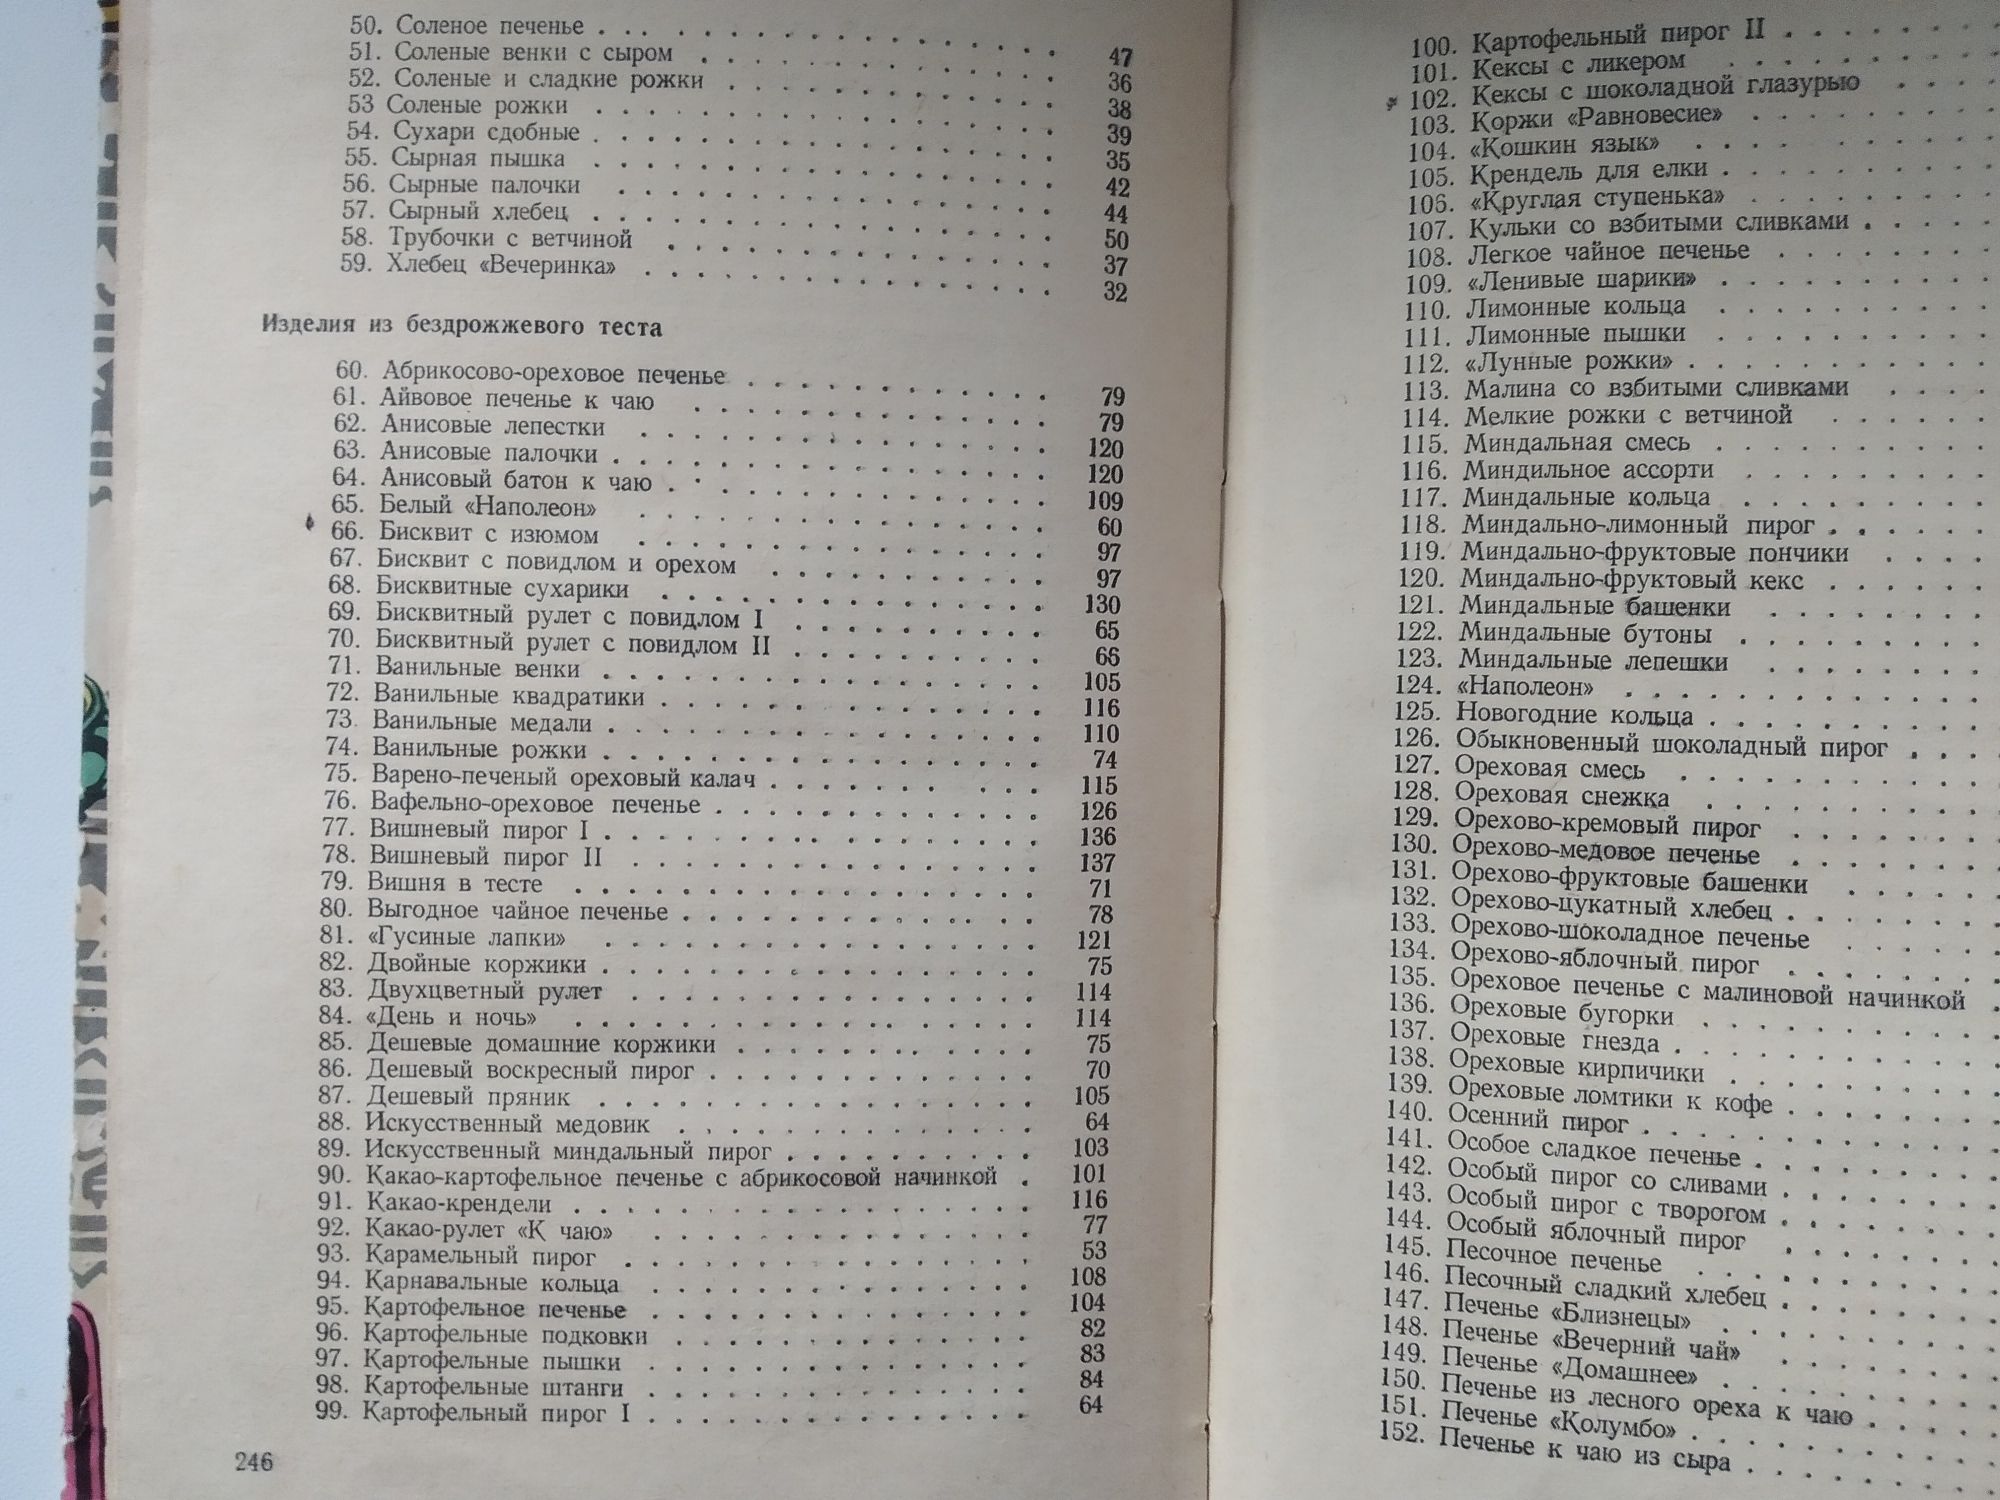 Домашнее печенье. Книга 500 видов домашнего печенья 1969 г.